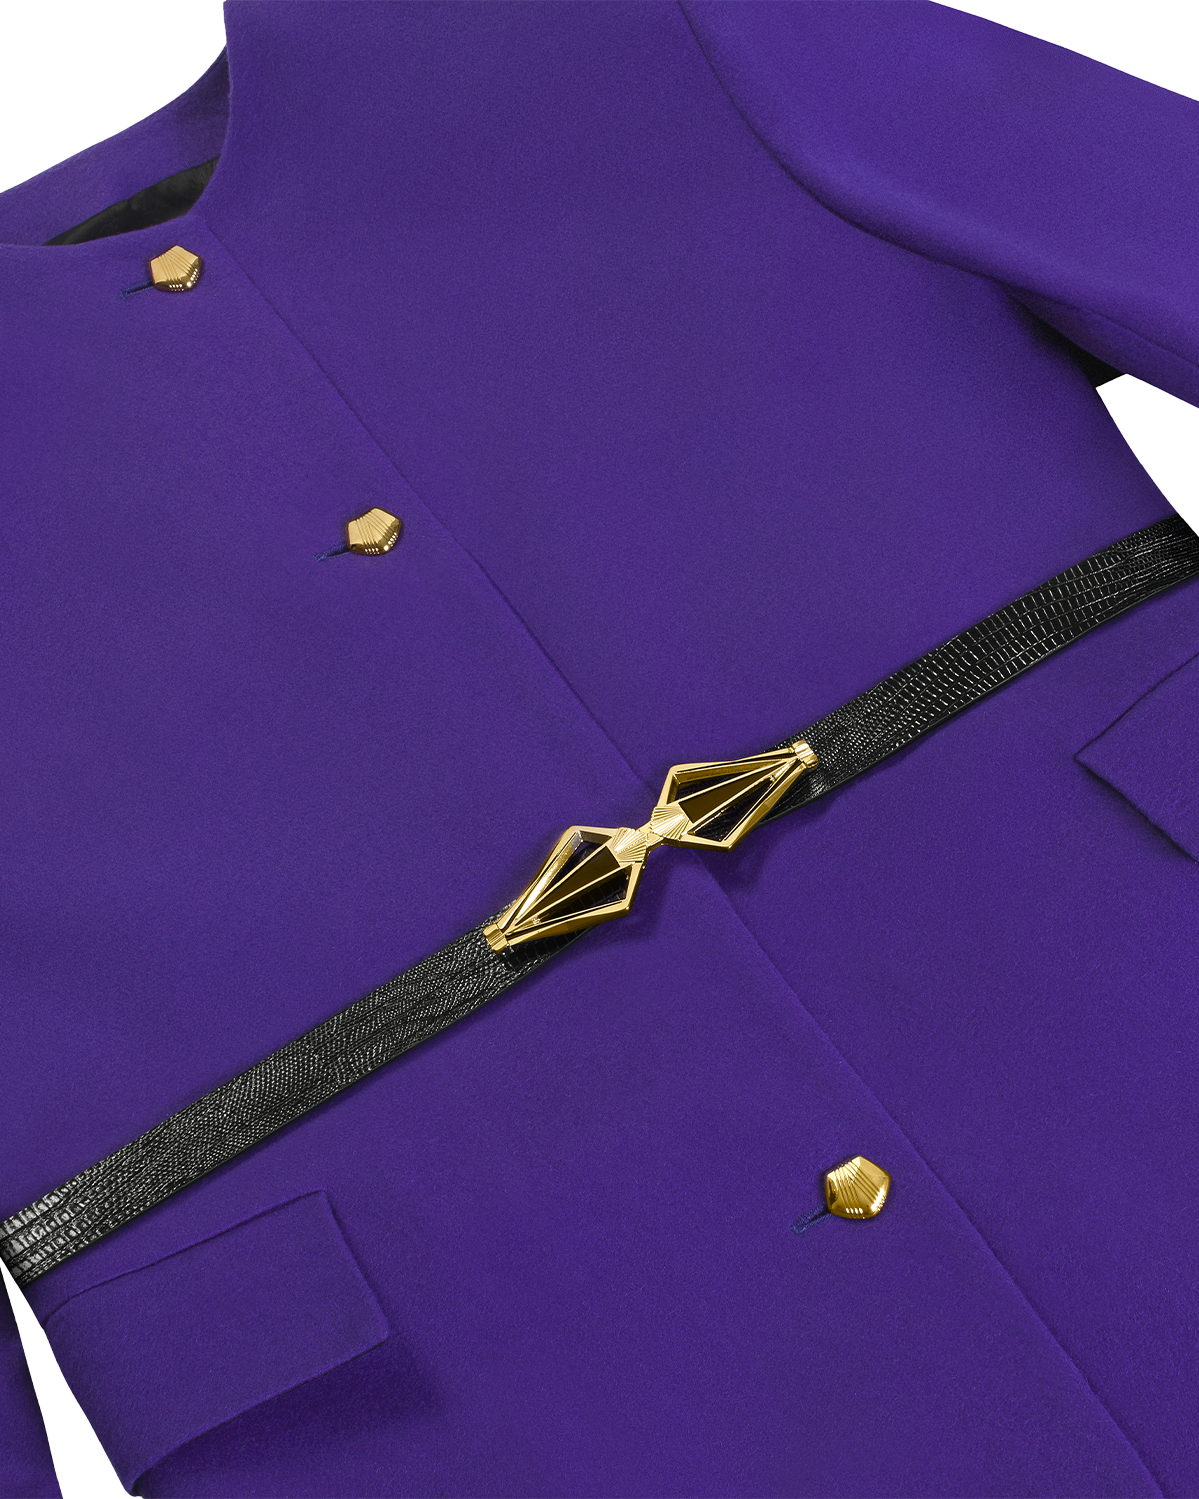 yomi_BZ0205_1_purple_blazer_cut_detail